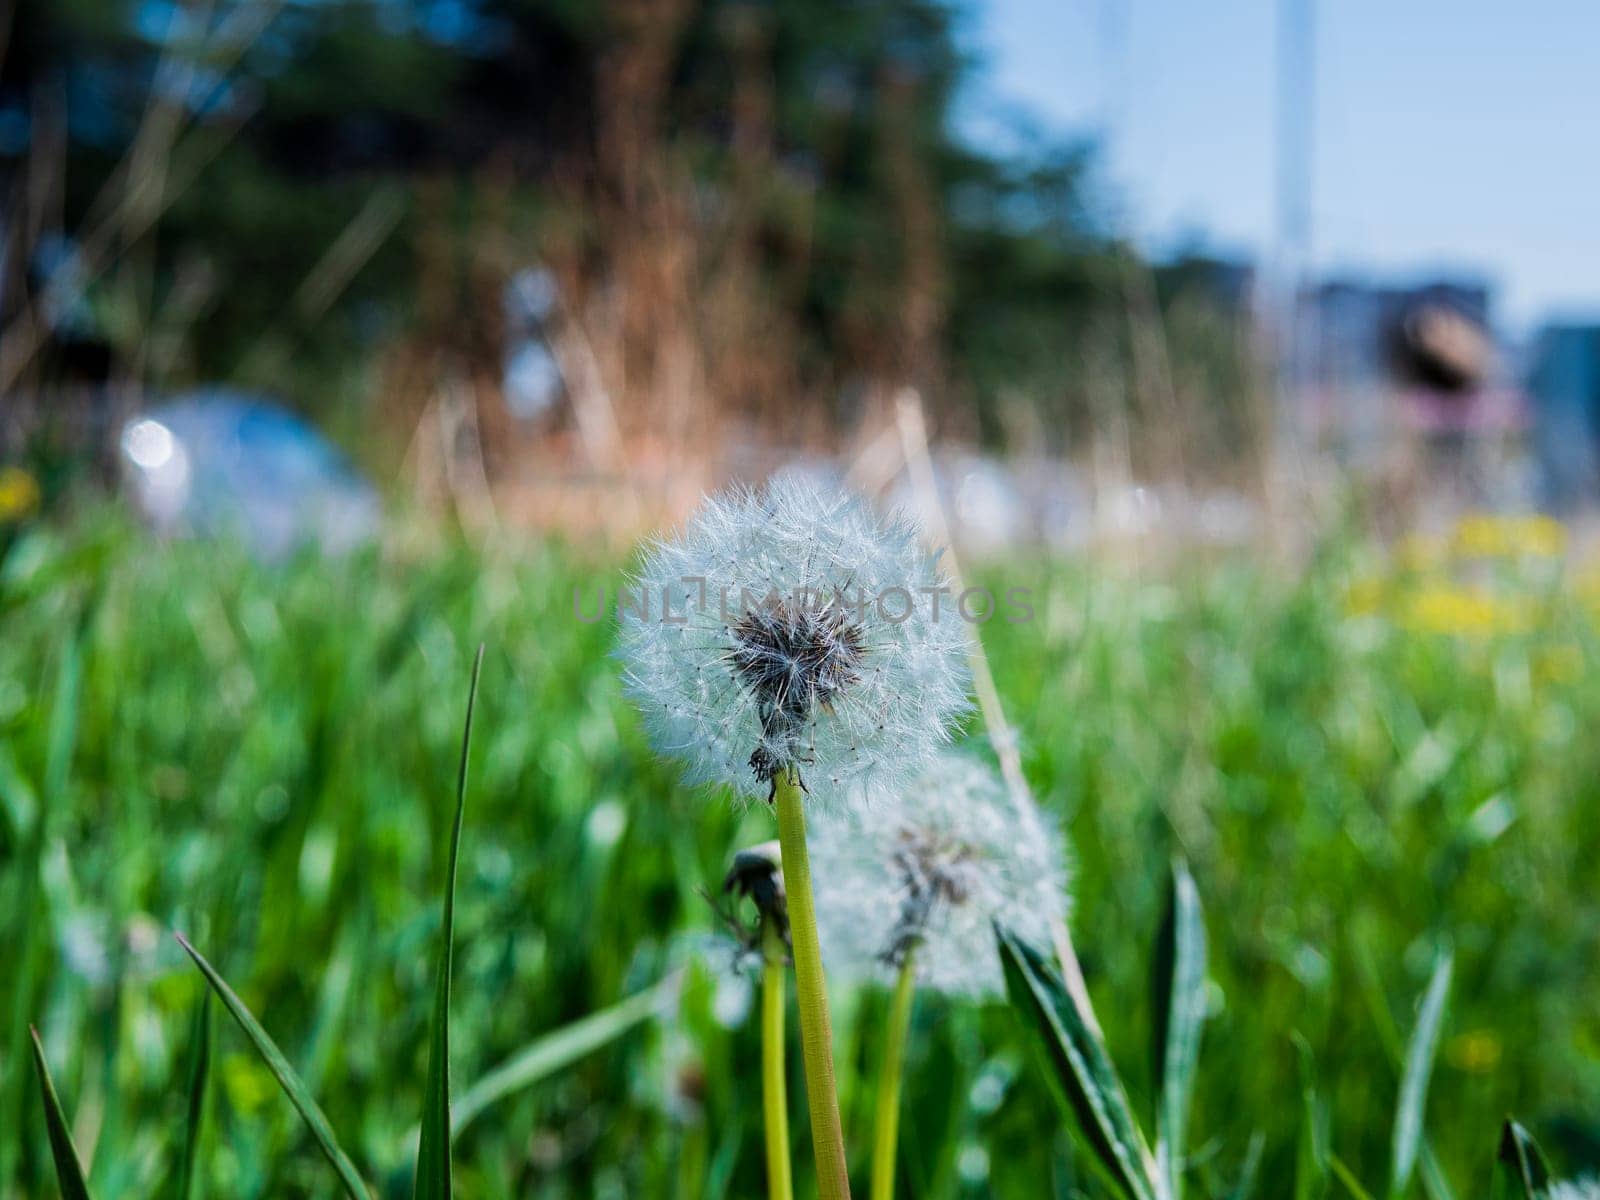 A dandelion blooms in a grassy meadow under the open sky by jackreznor